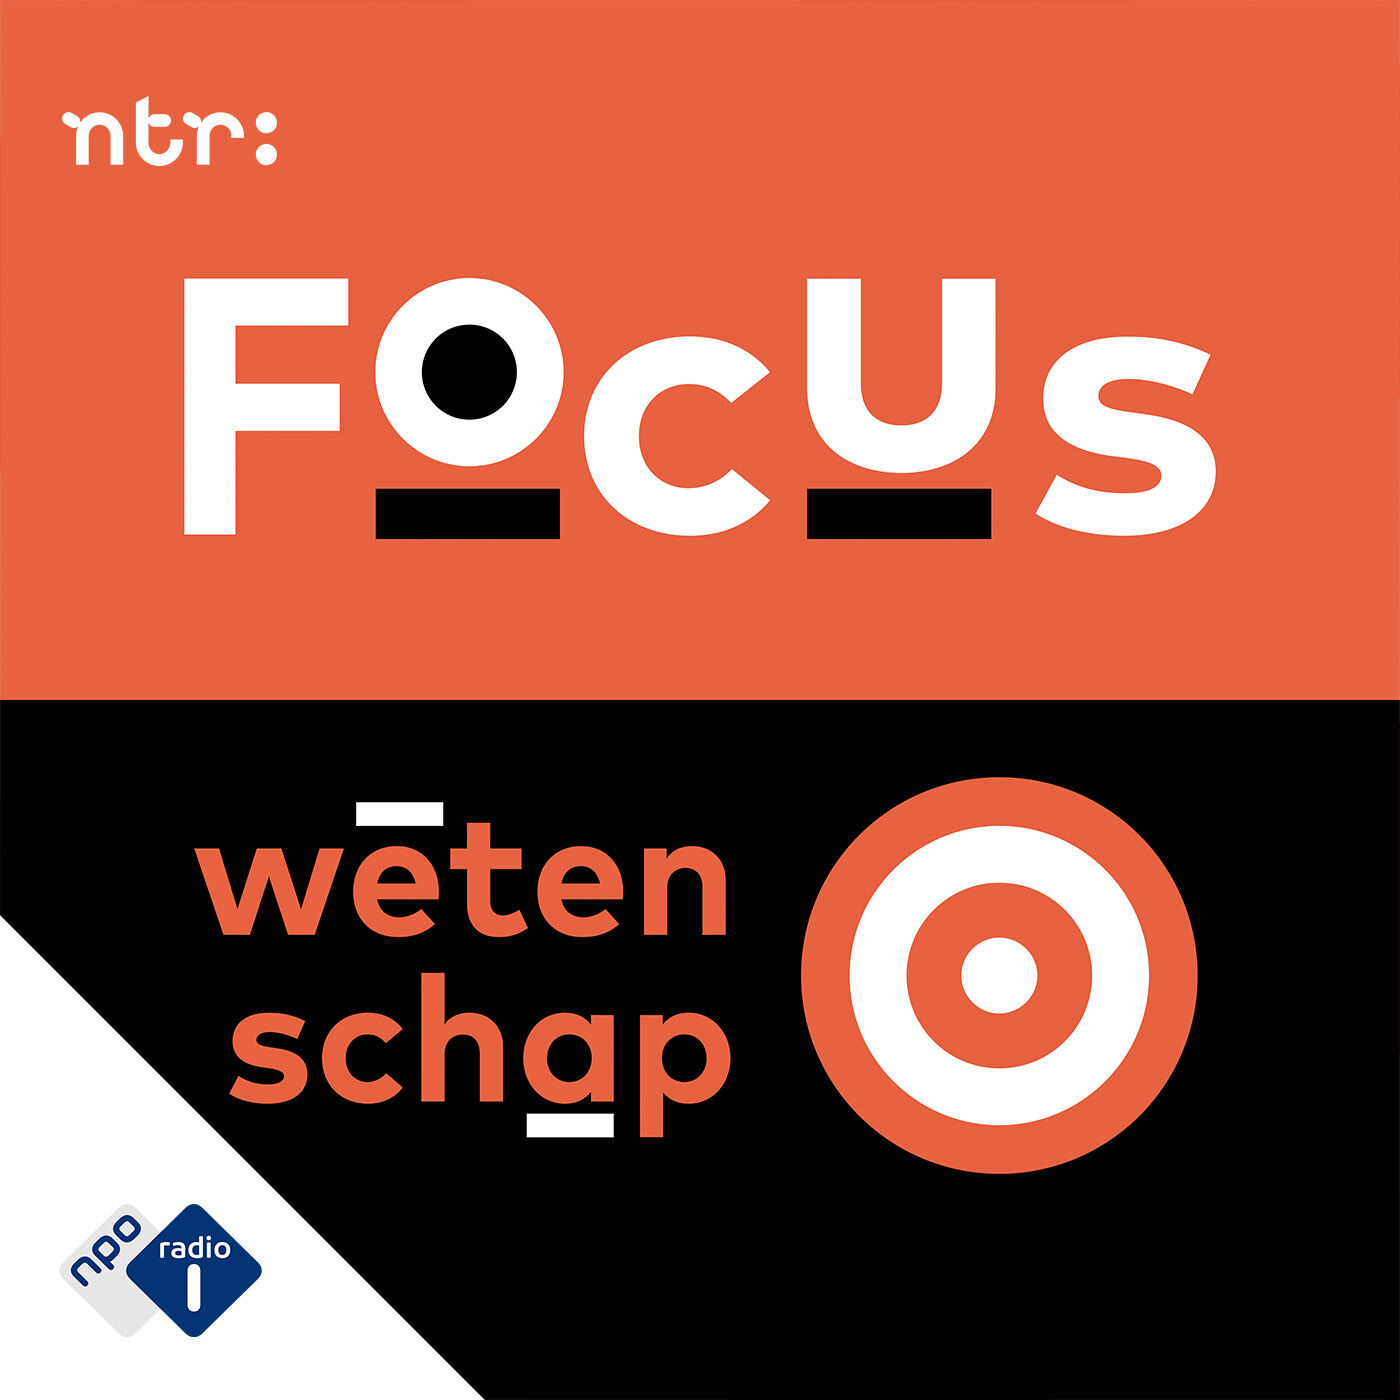 Focus Wetenschap podcast show image